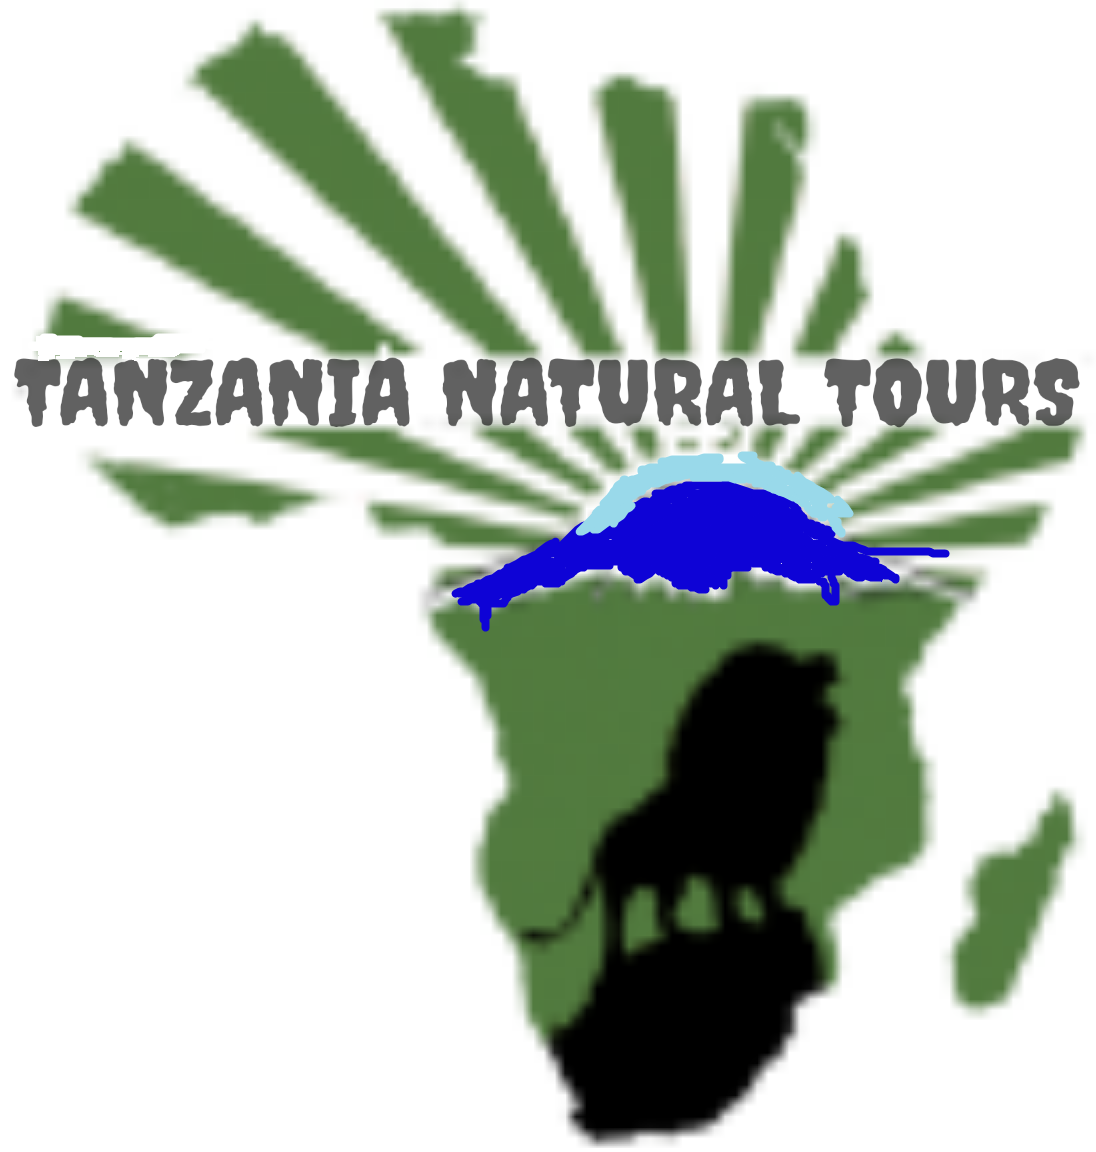 4 days safari Tanzania to Serengeti, Ngorongoro & it's price